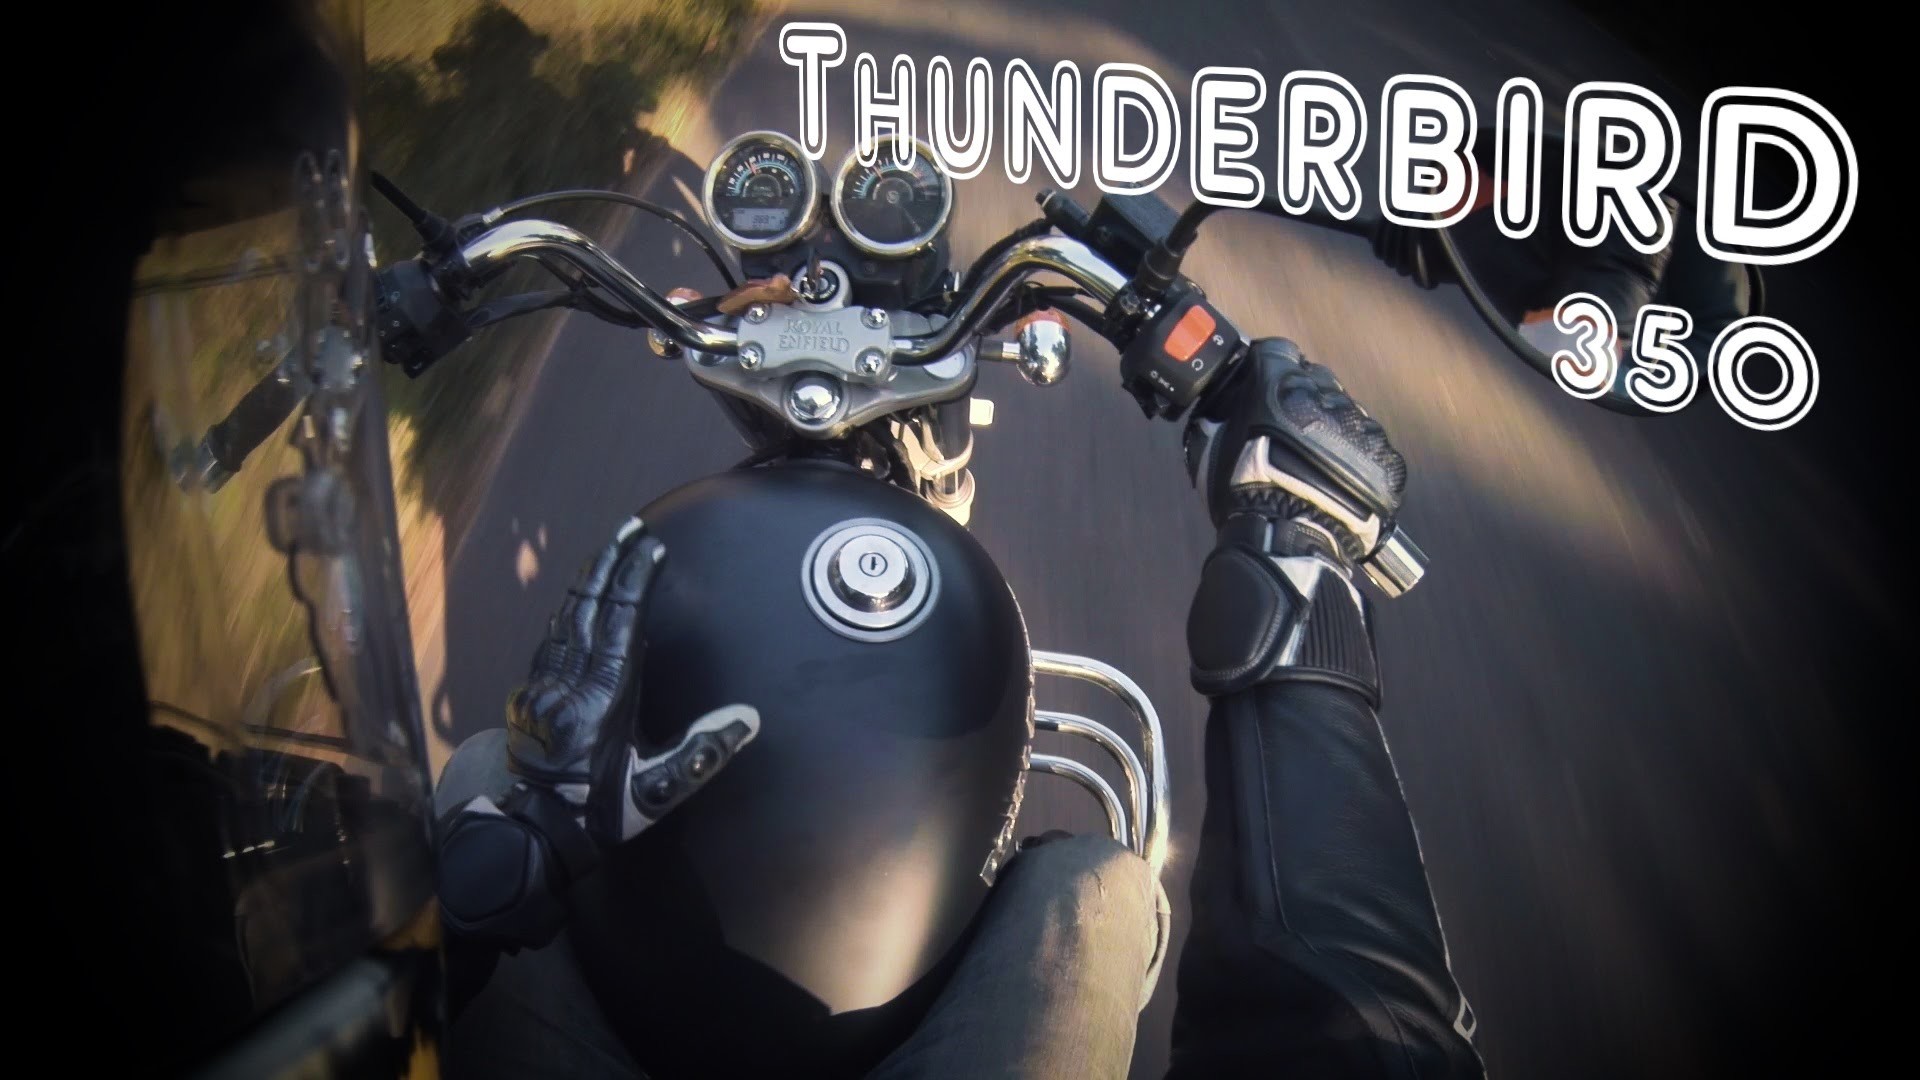 thunderbird 350 fondos de pantalla hd,motocicleta,vehículo,yelmo,equipo de protección personal,casco de motocicleta